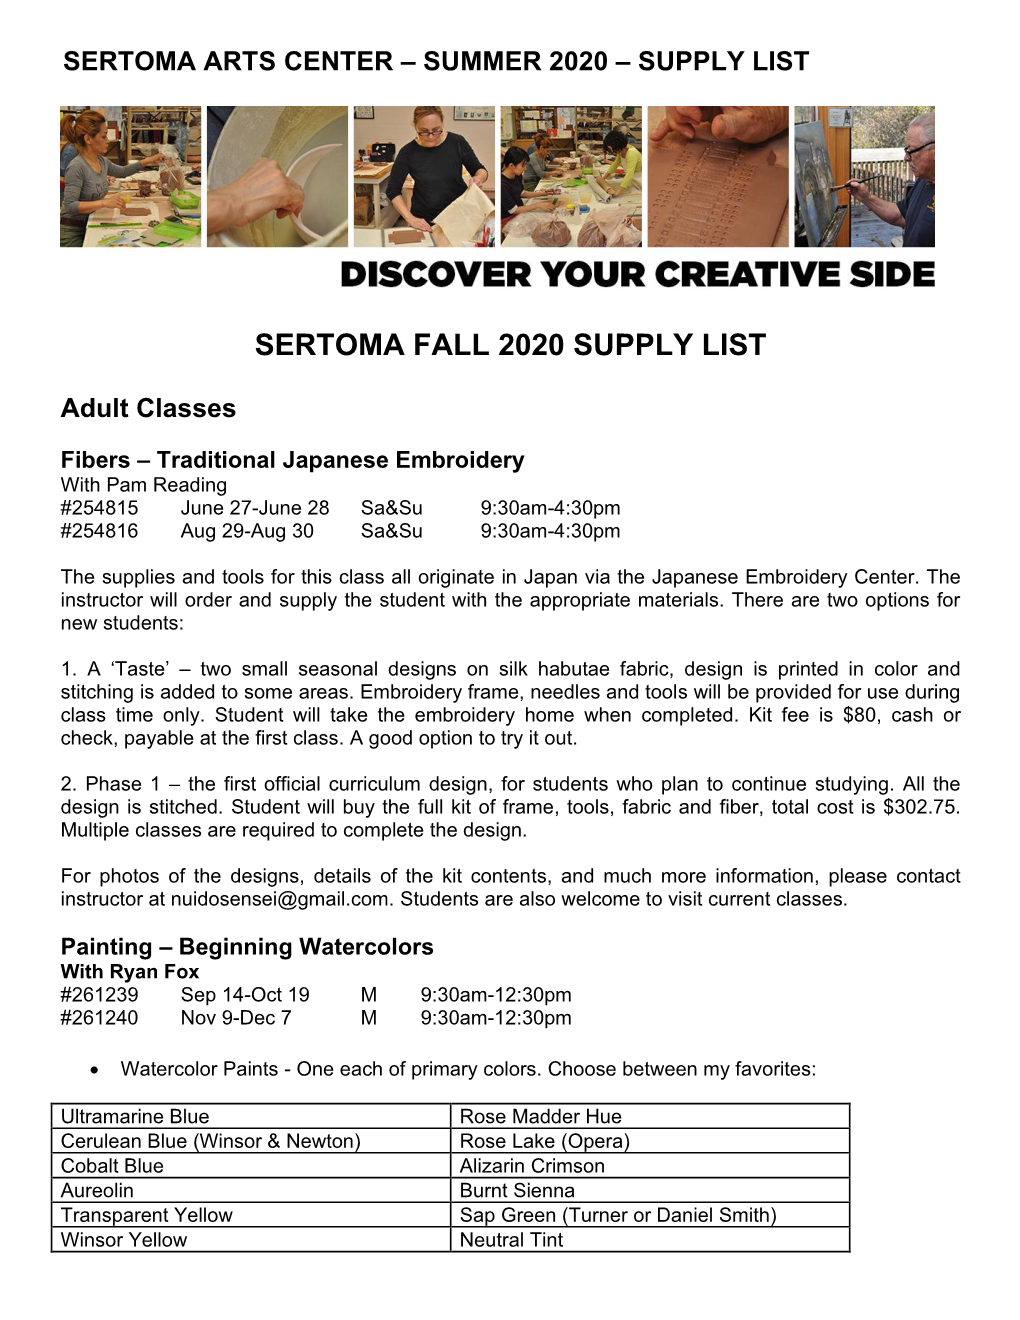 Sertoma Arts Center Fall 2020 Supply List